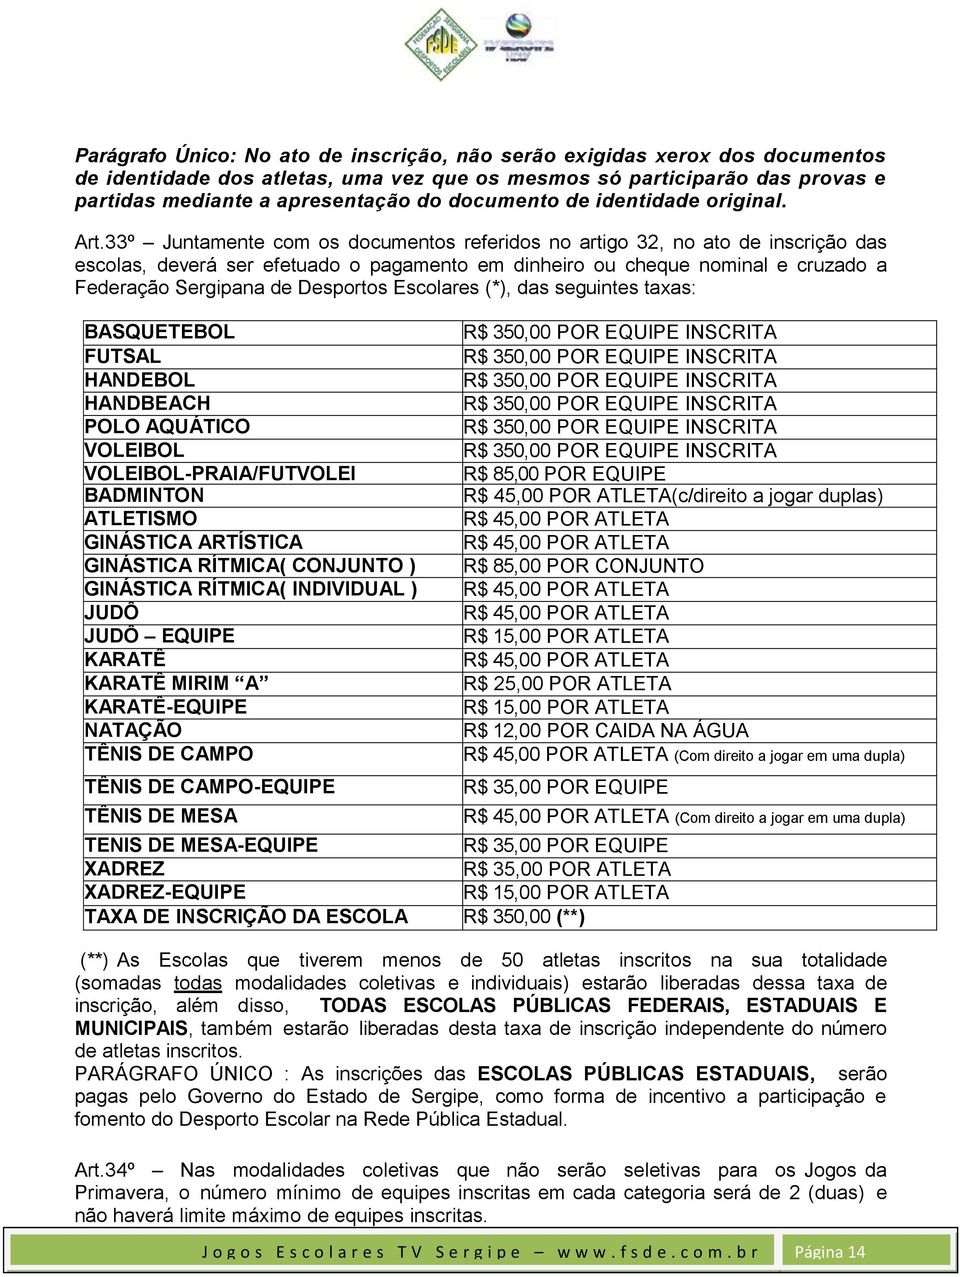 33º Juntamente com os documentos referidos no artigo 32, no ato de inscrição das escolas, deverá ser efetuado o pagamento em dinheiro ou cheque nominal e cruzado a Federação Sergipana de Desportos